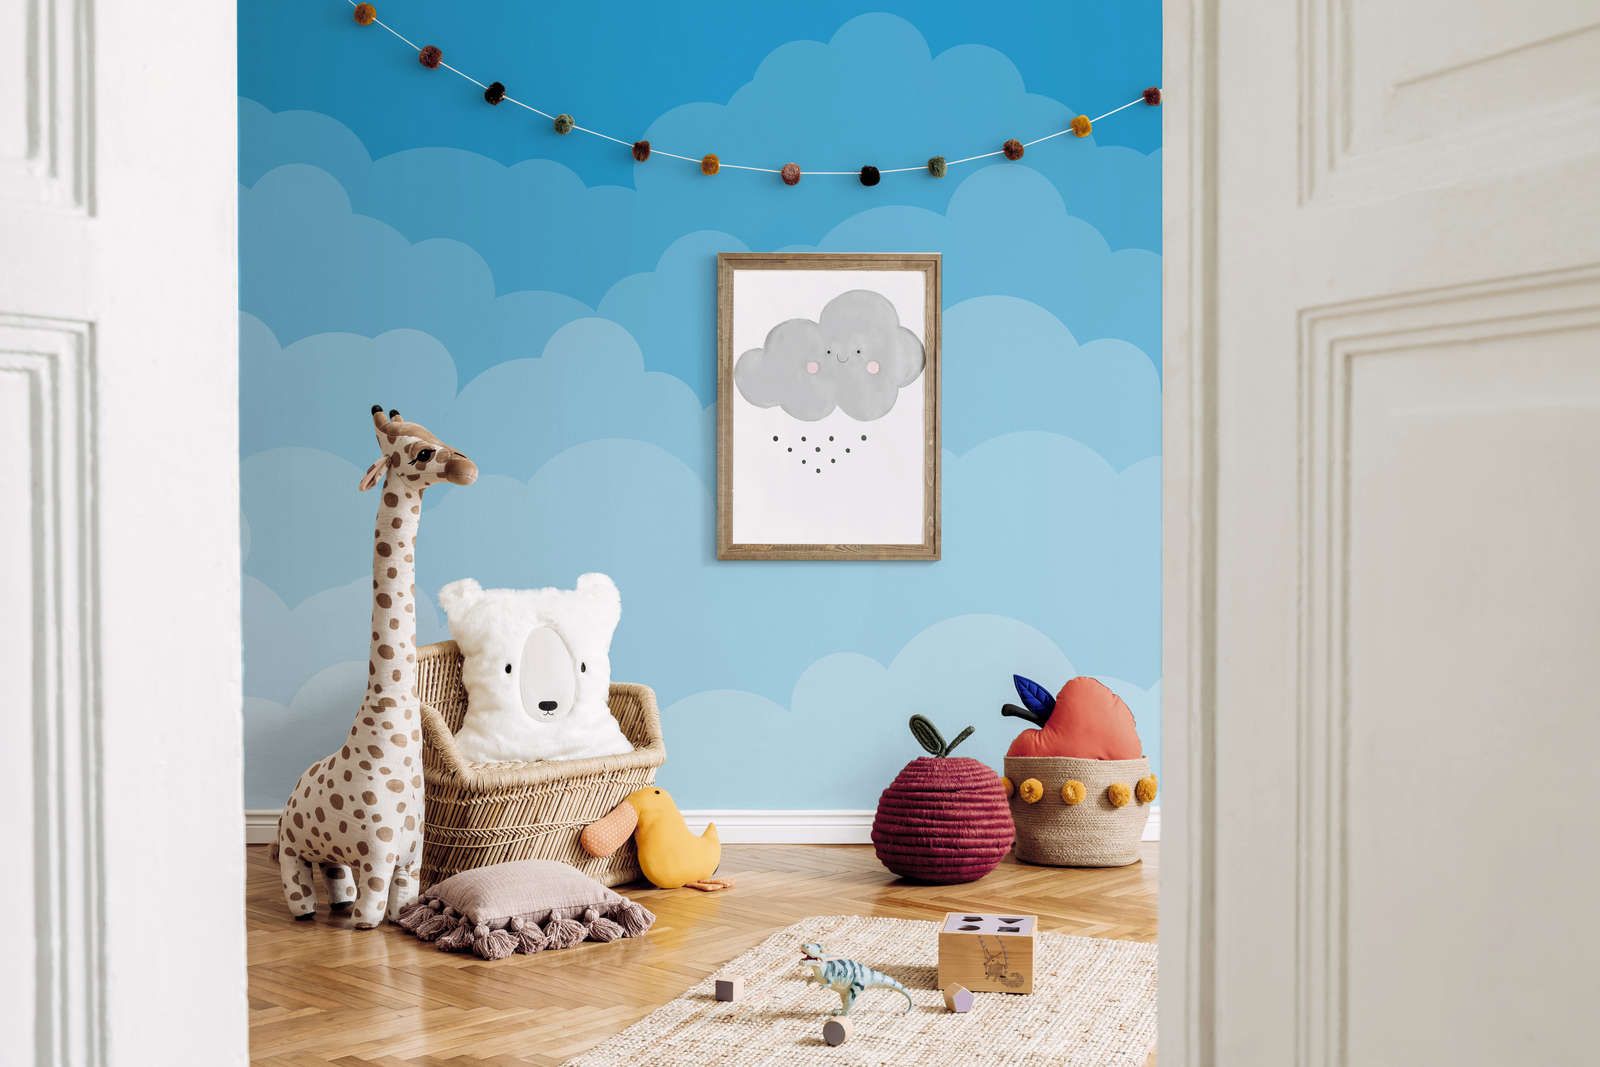             Digital behang Lucht met wolken in komische stijl - Glad & mat vlies
        